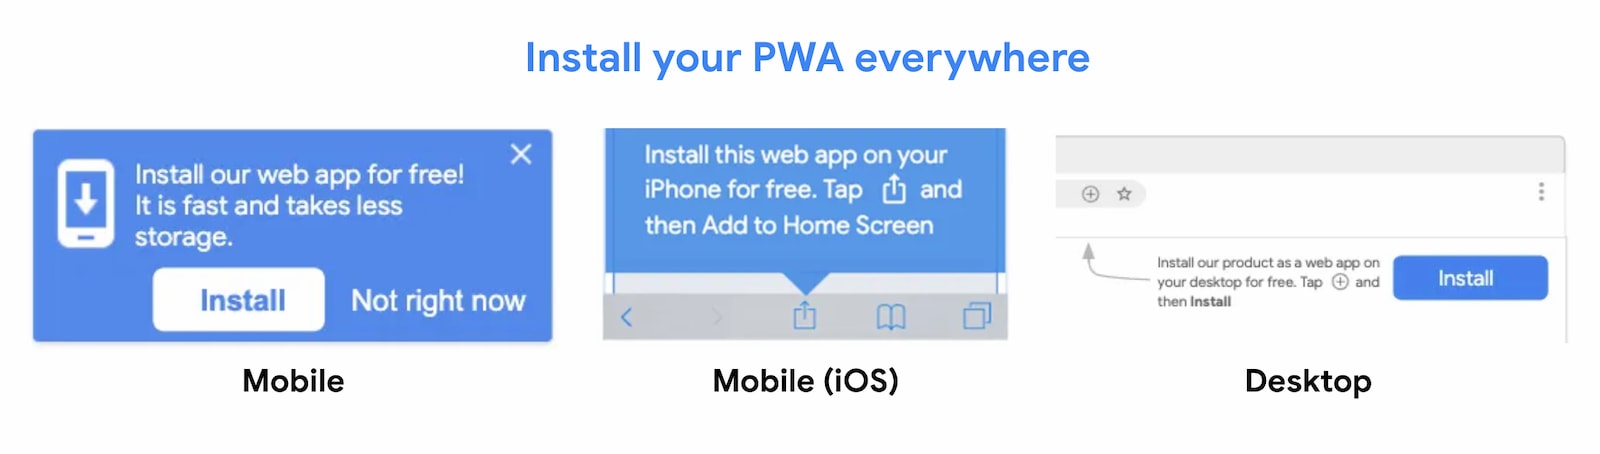 Las PWA se pueden instalar en todas partes